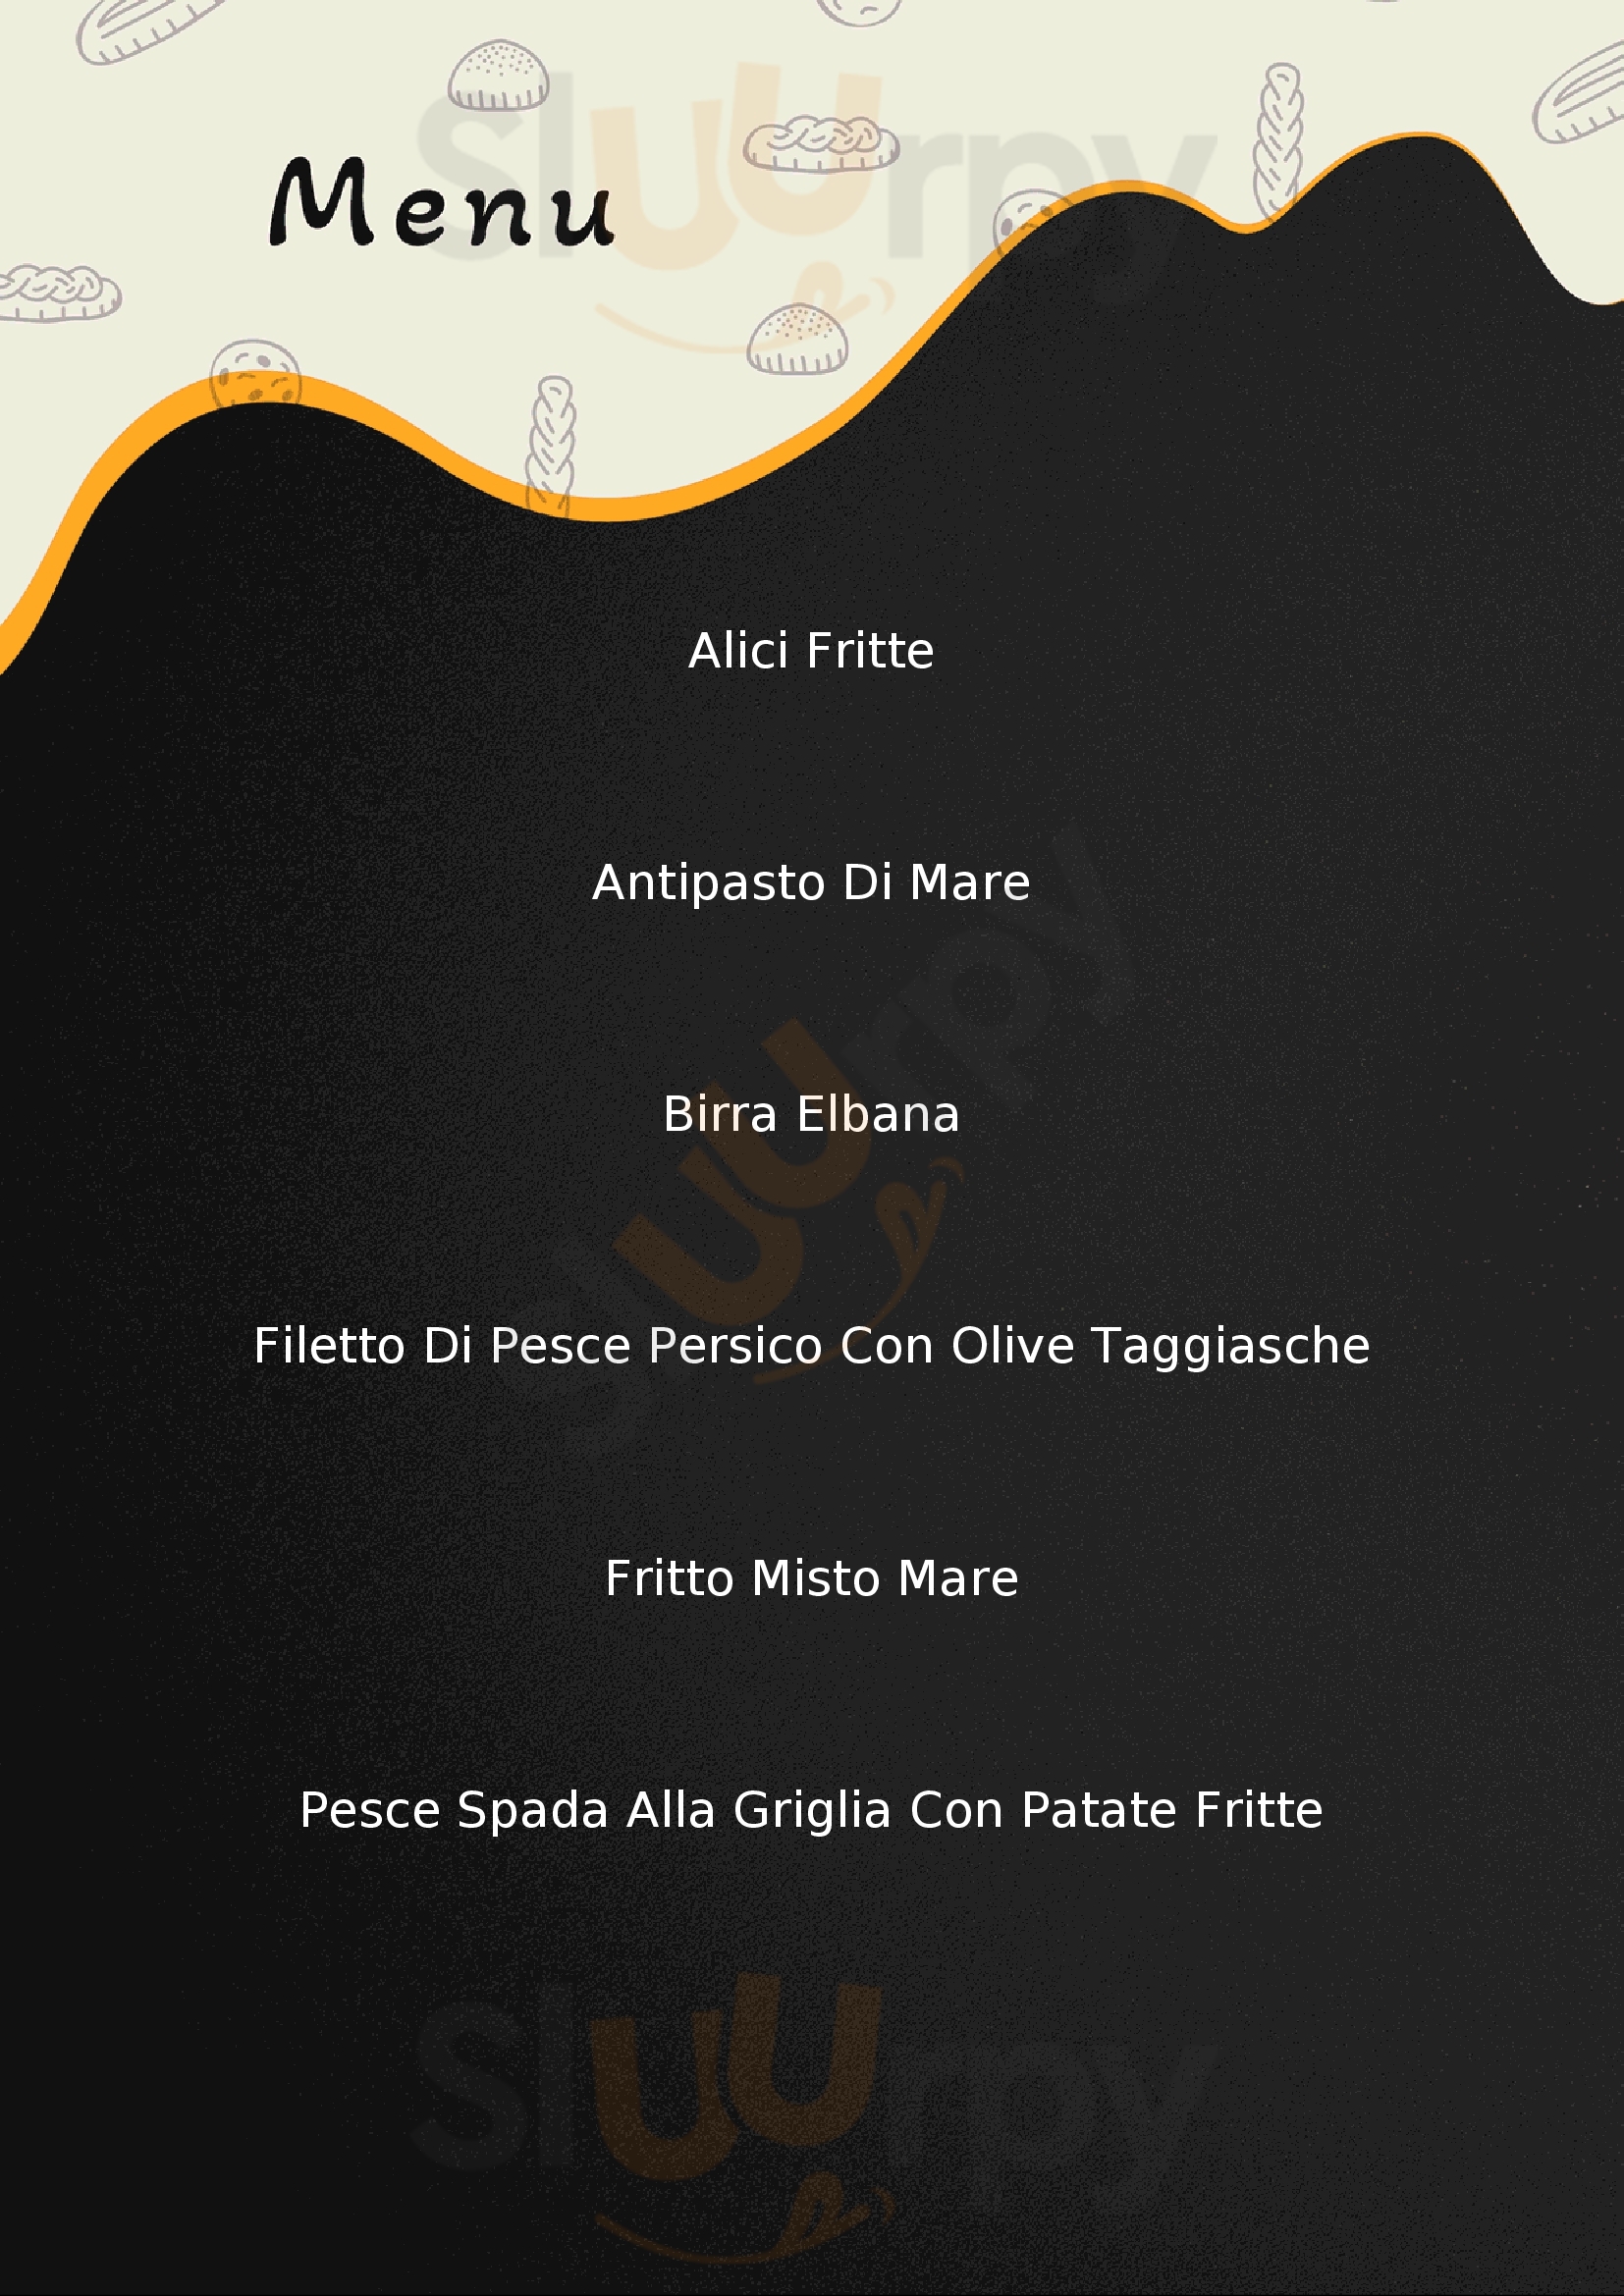 Da Beppe Ristorante-Pizzeria Marciana Marina menù 1 pagina